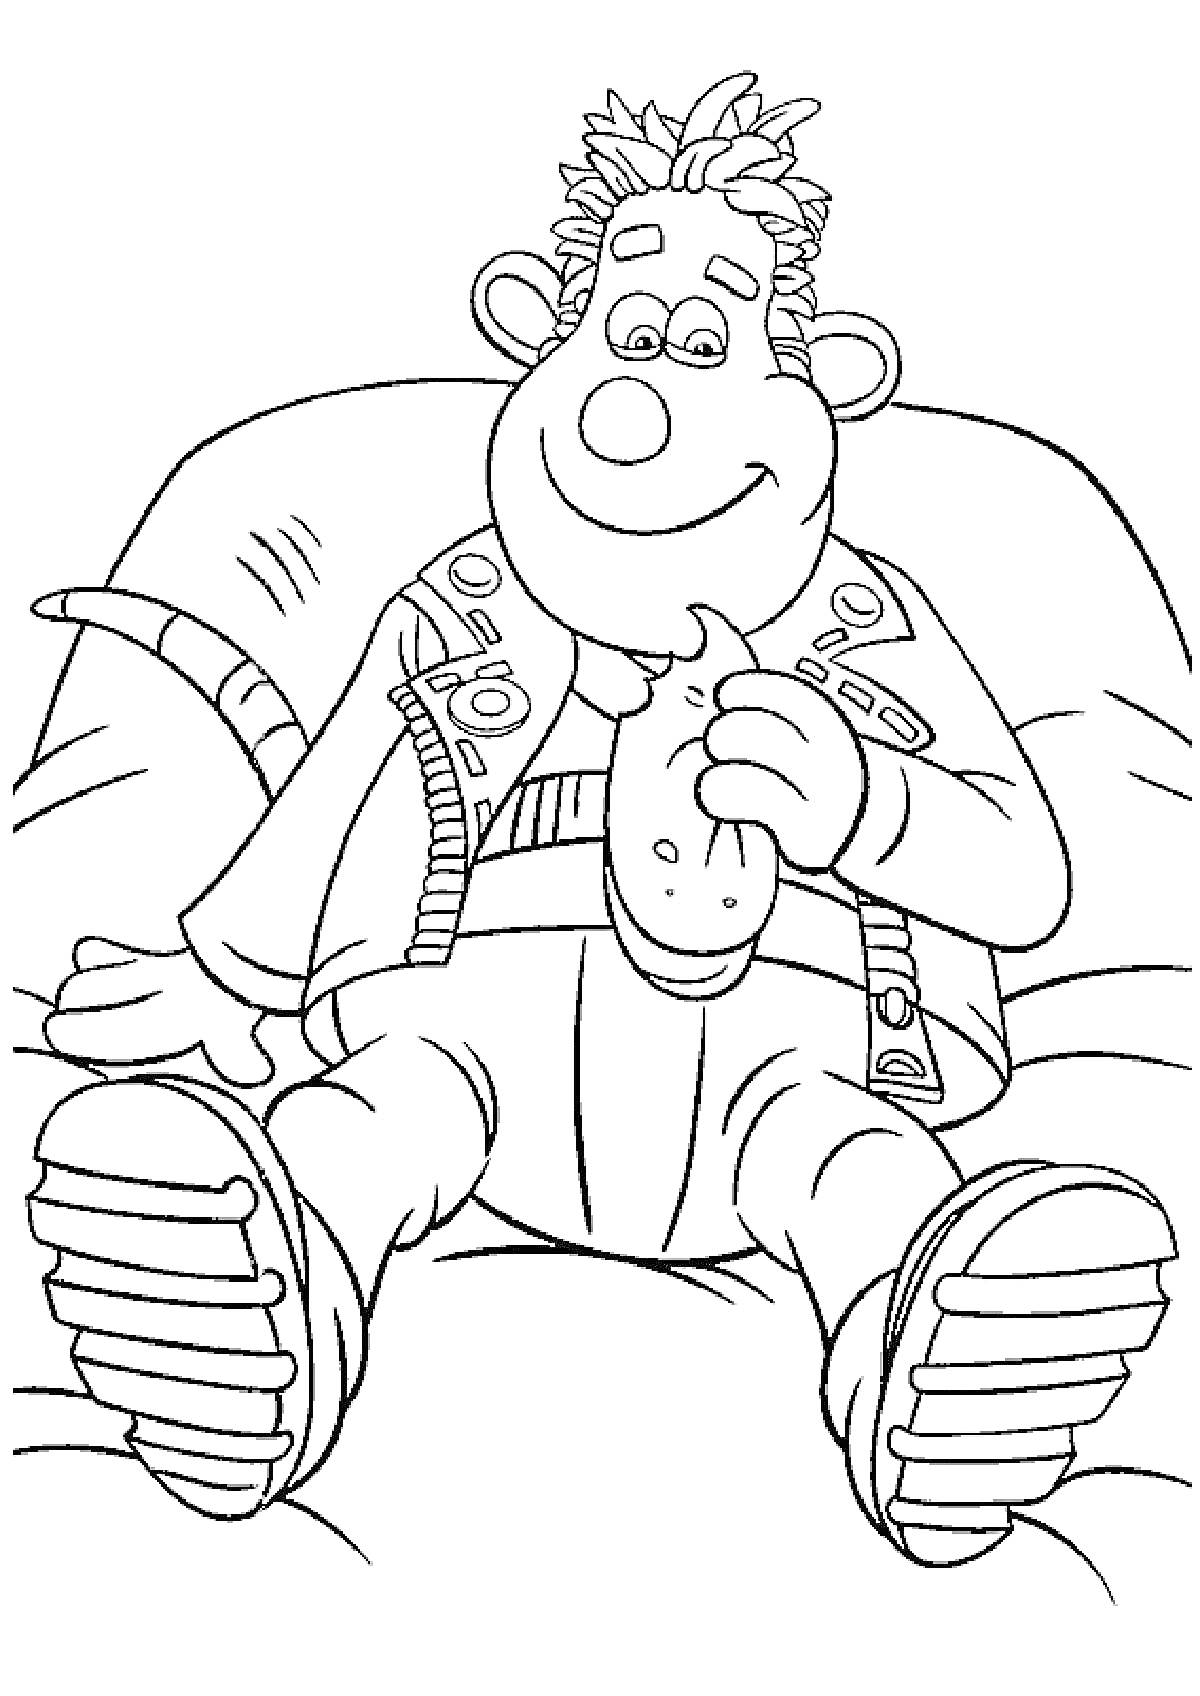 Раскраска Плюшевый персонаж с бутербродом на диване